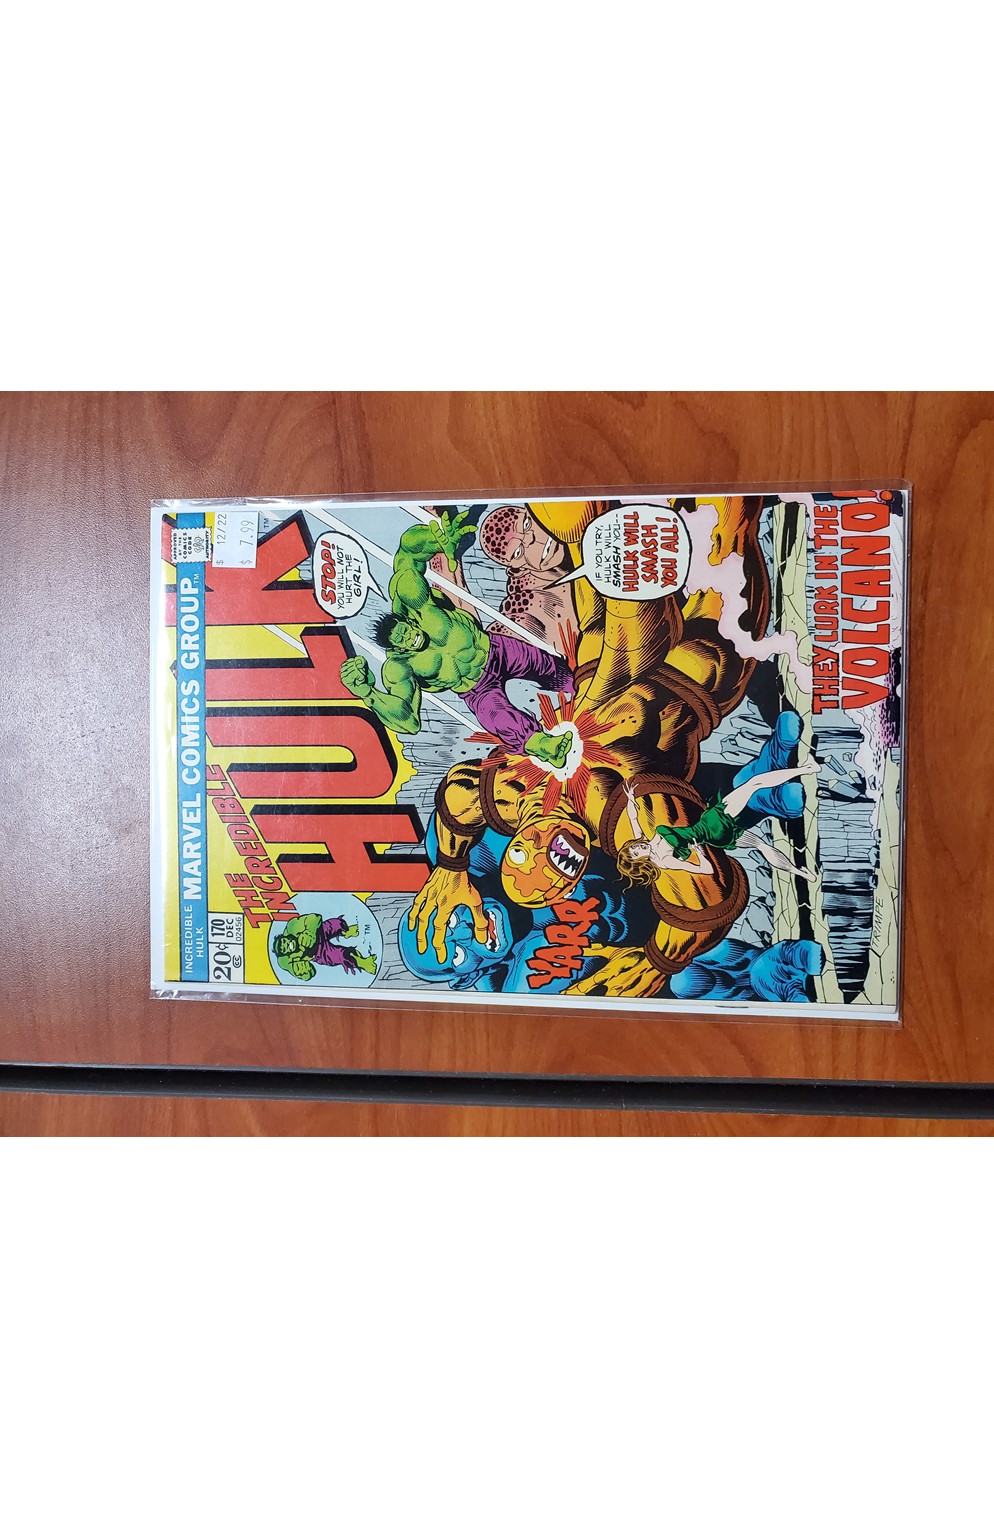 Incredible Hulk #170 Fn+